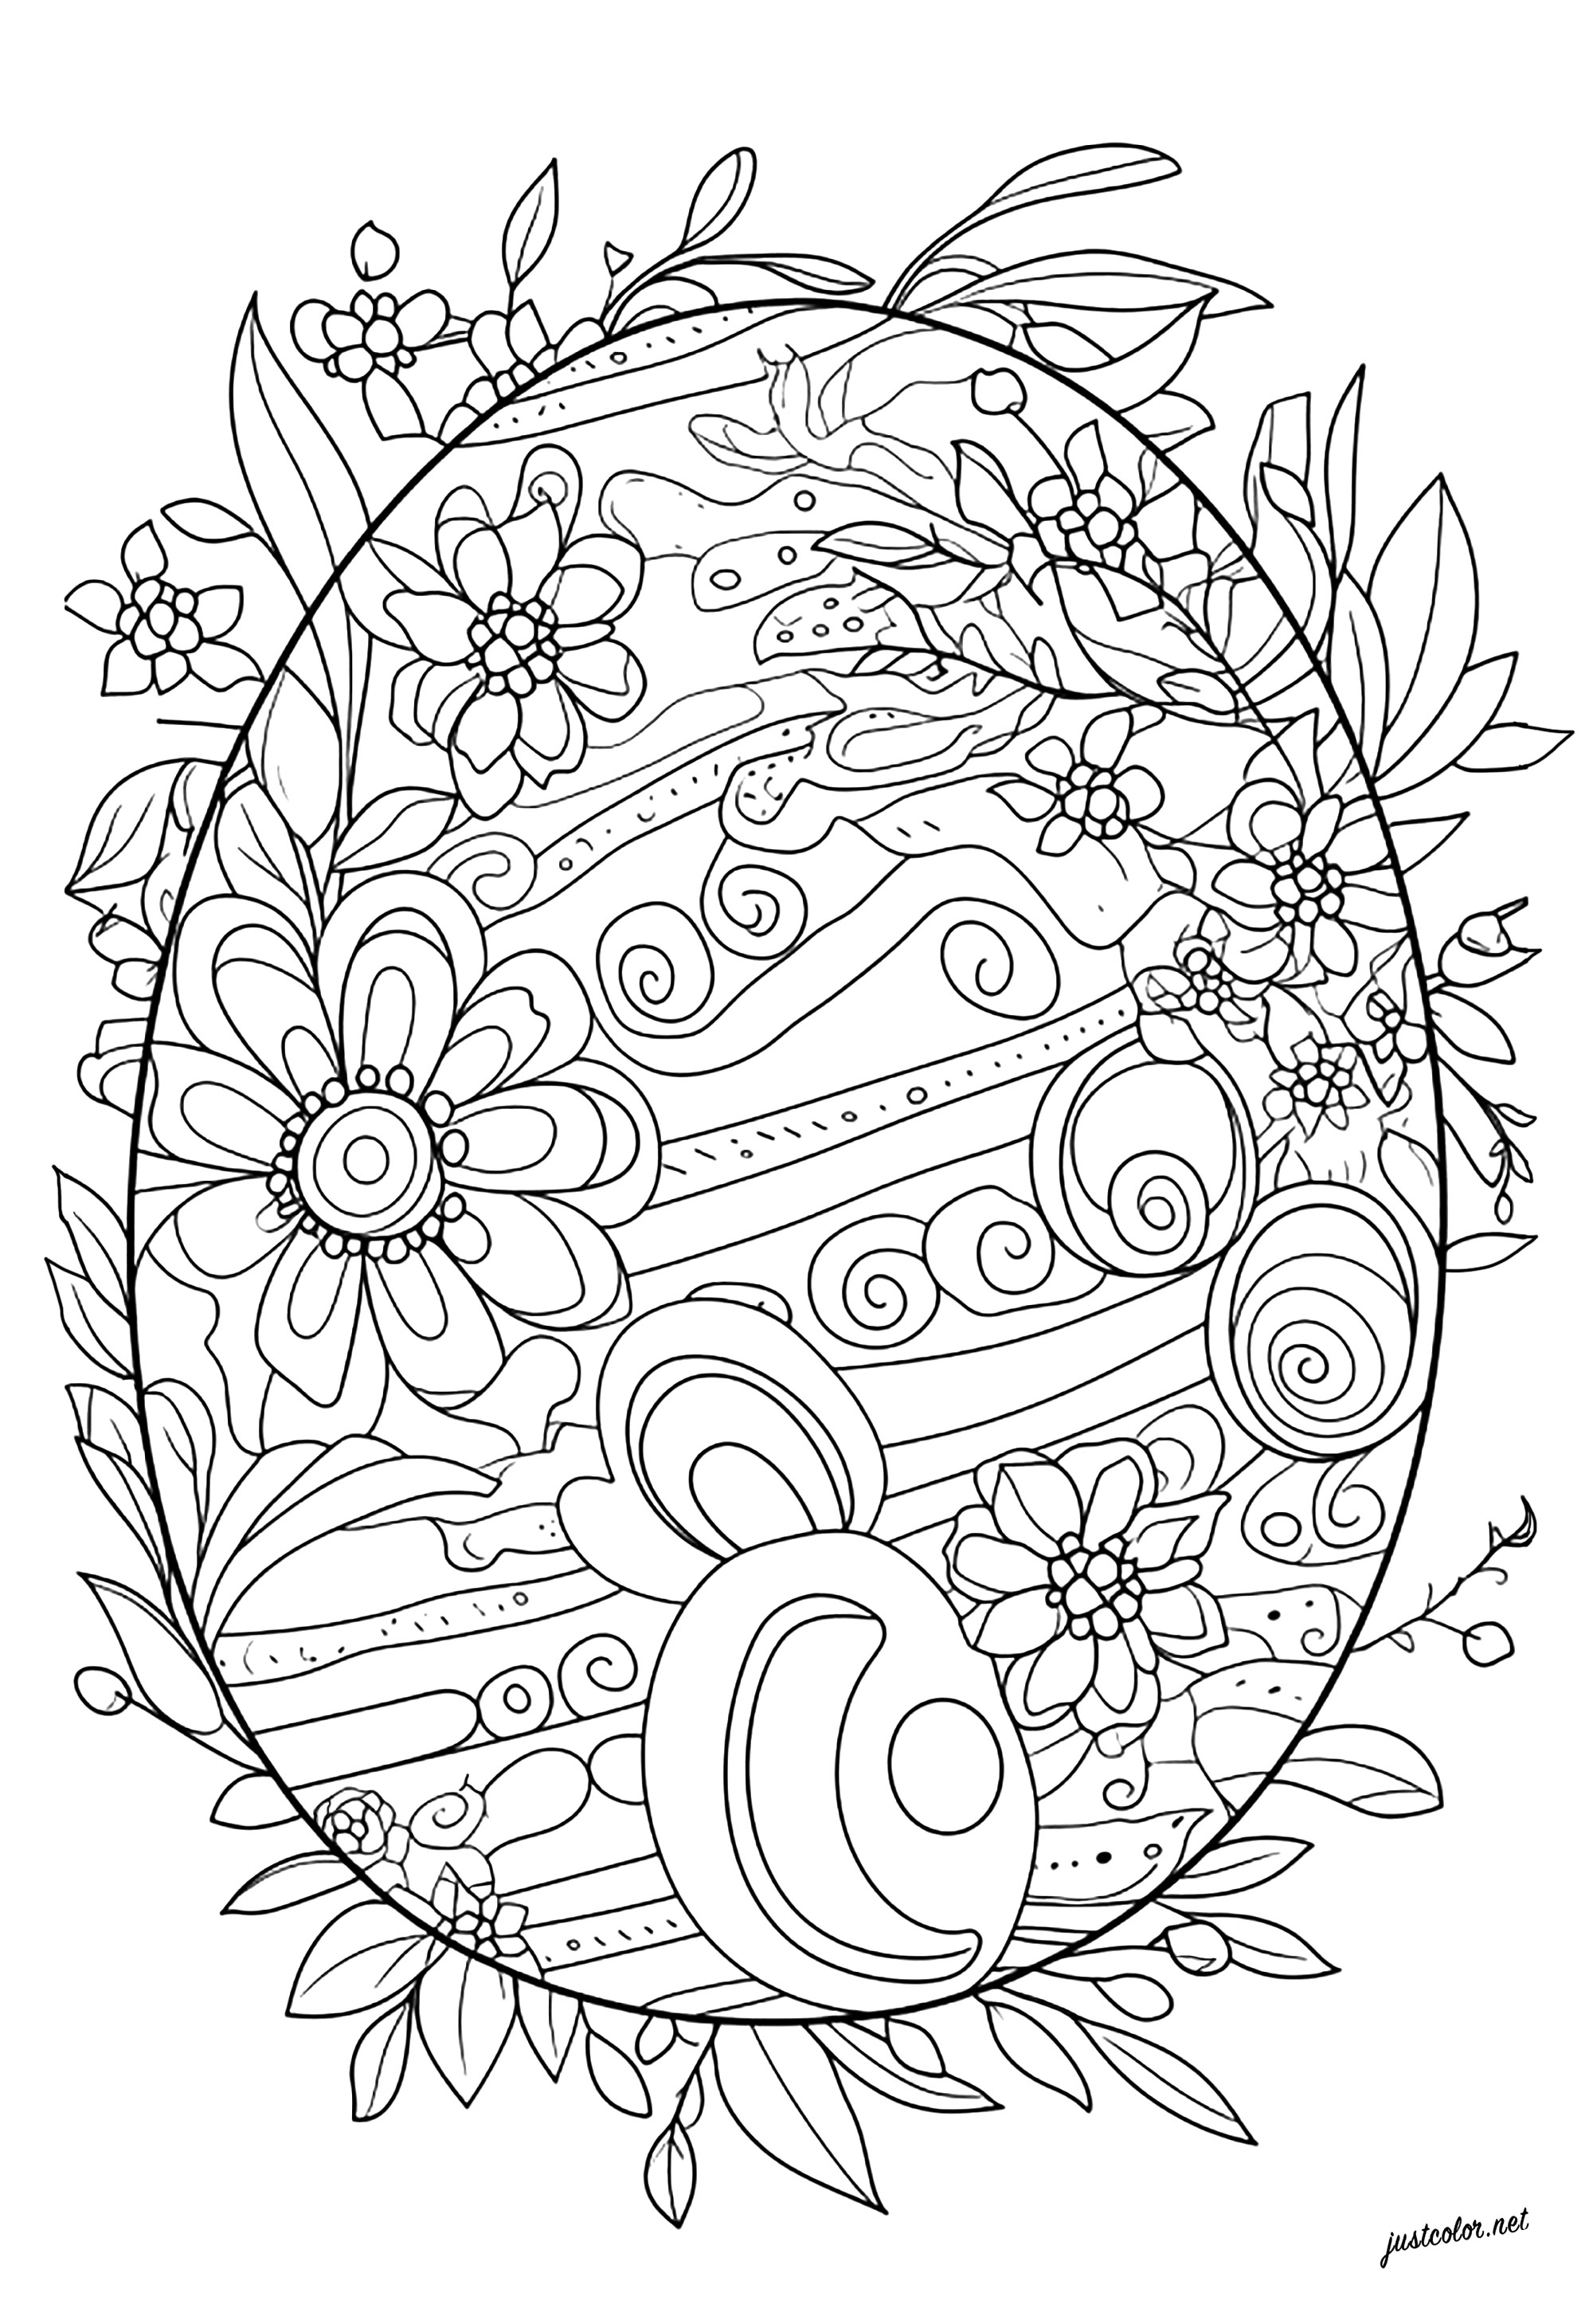 Colorazione originale di un uovo di Pasqua. Colorate i motivi floreali e astratti di questo uovo di Pasqua.